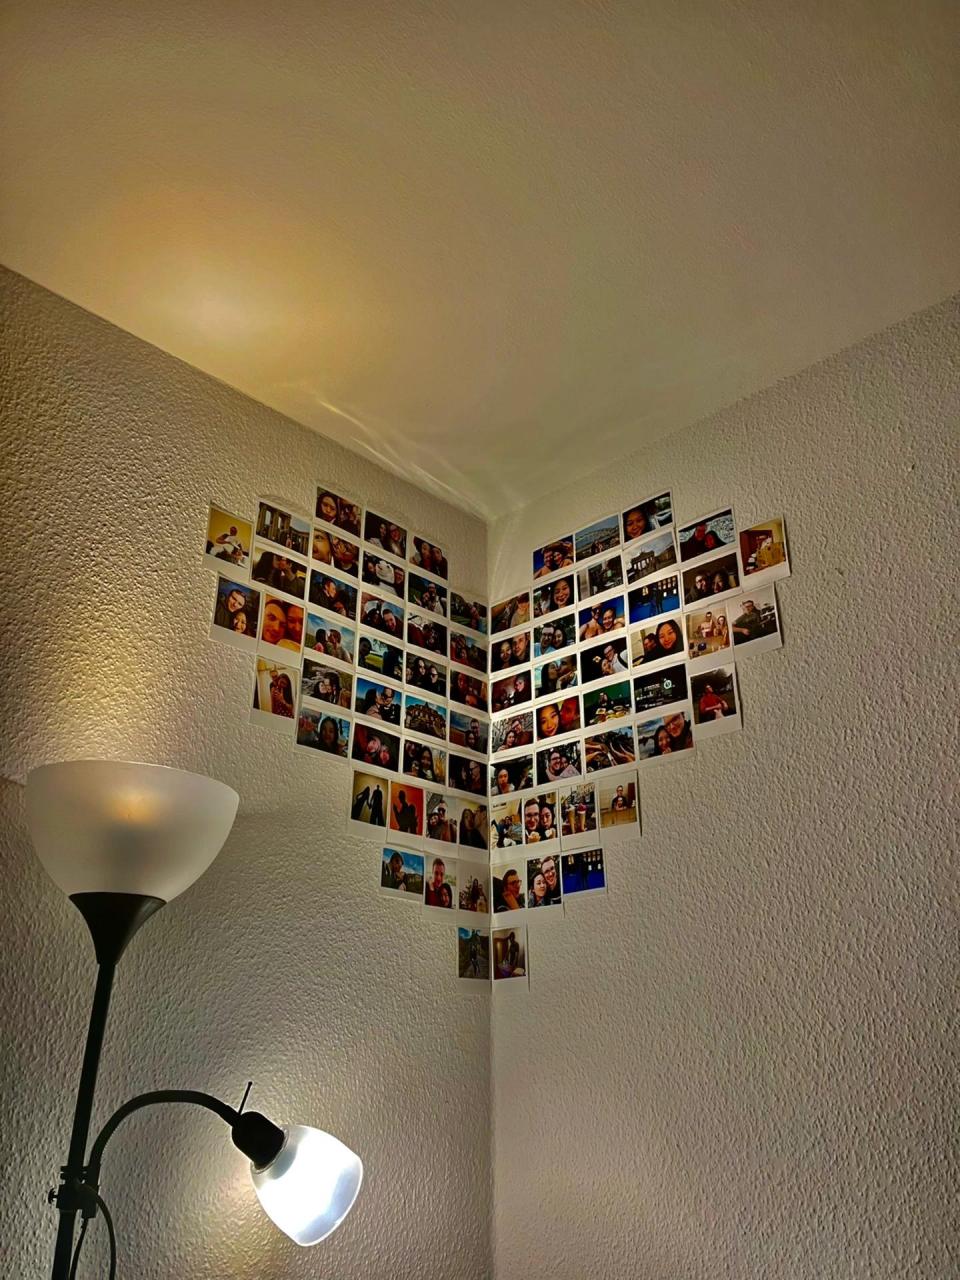 10张照片墙图片大全集图片